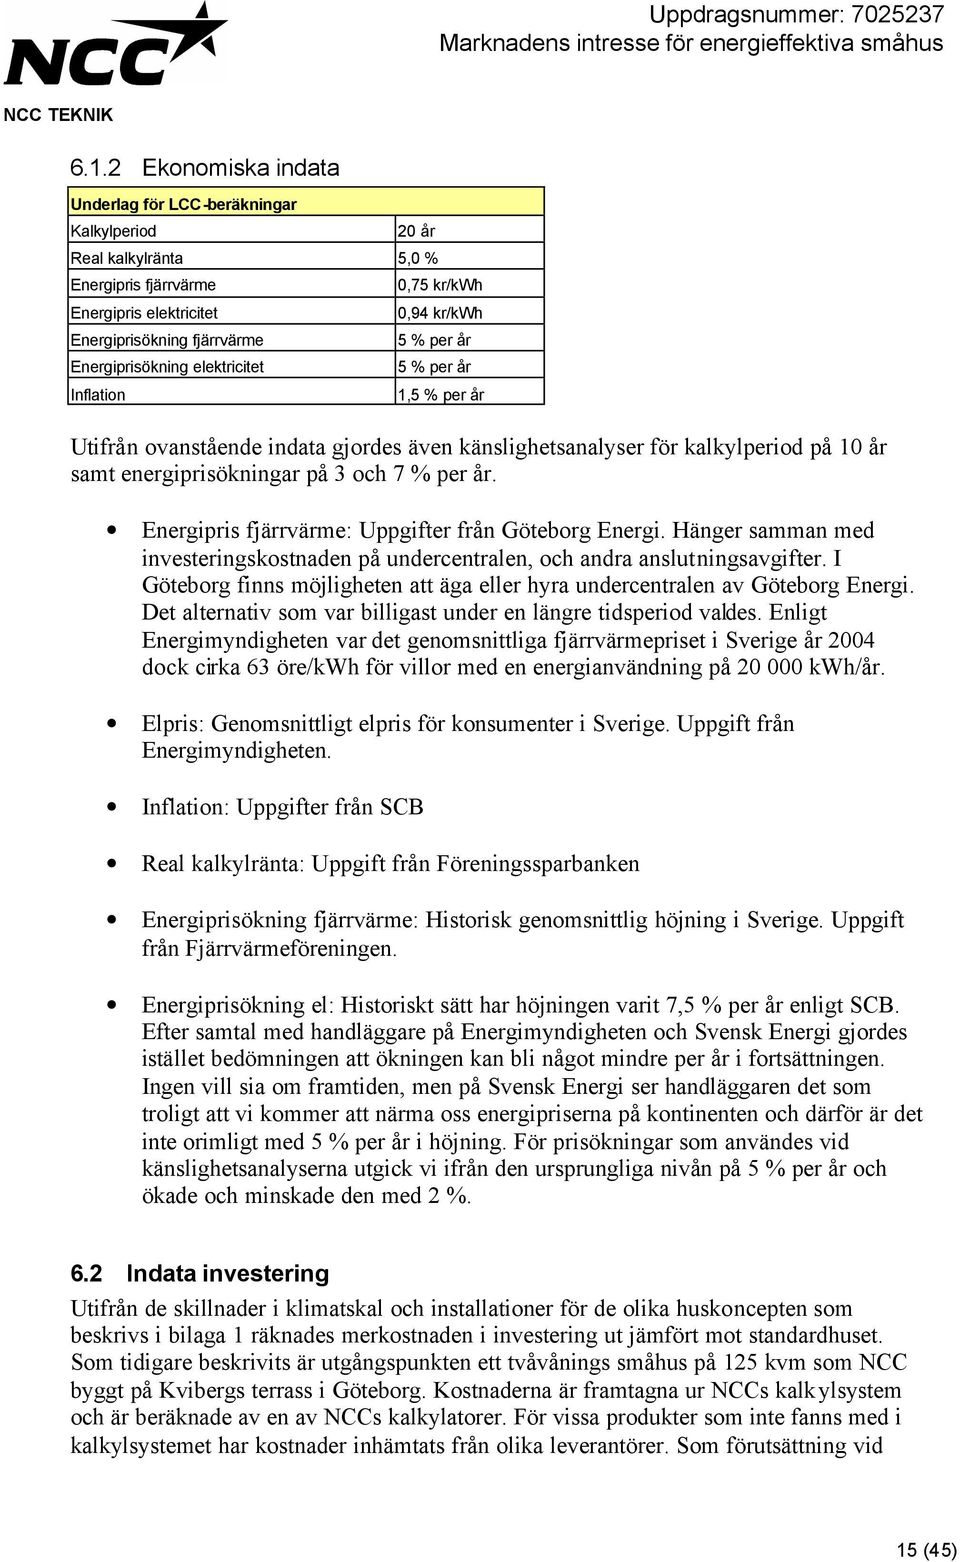 Energipris fjärrvärme: Uppgifter från Göteborg Energi. Hänger samman med investeringskostnaden på undercentralen, och andra anslutningsavgifter.